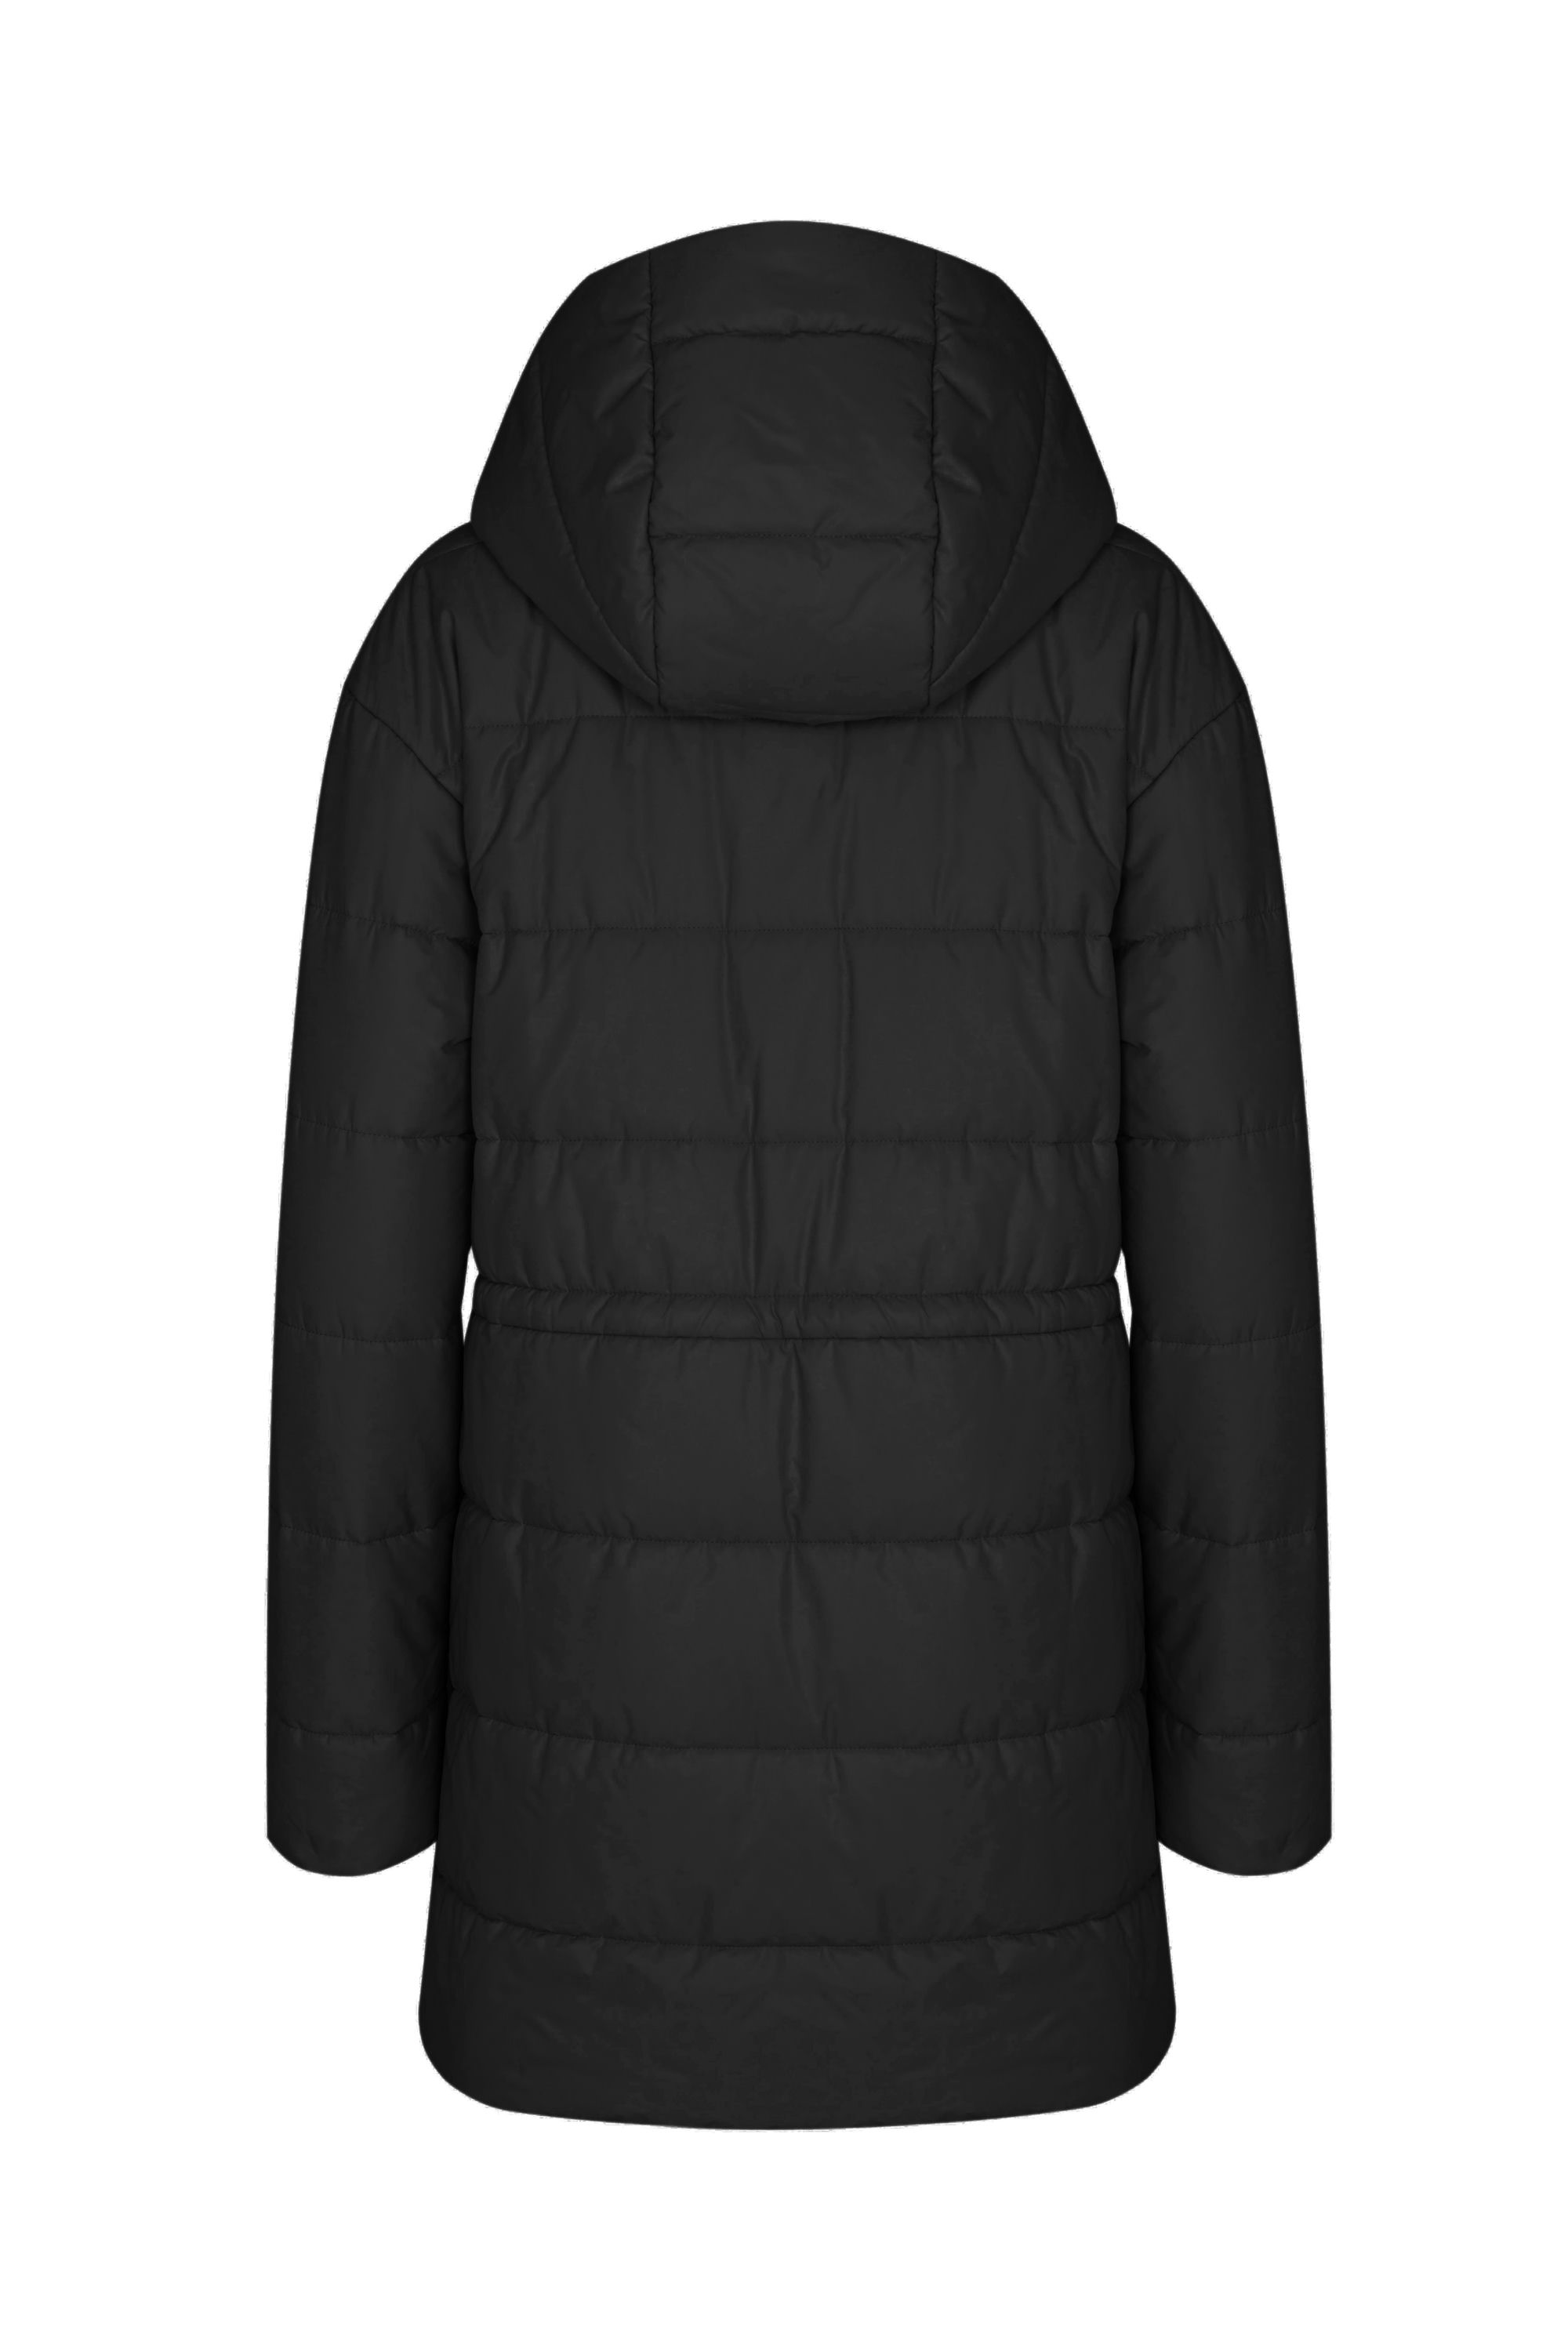 Пальто женское плащевое утепленное 5-13121-1